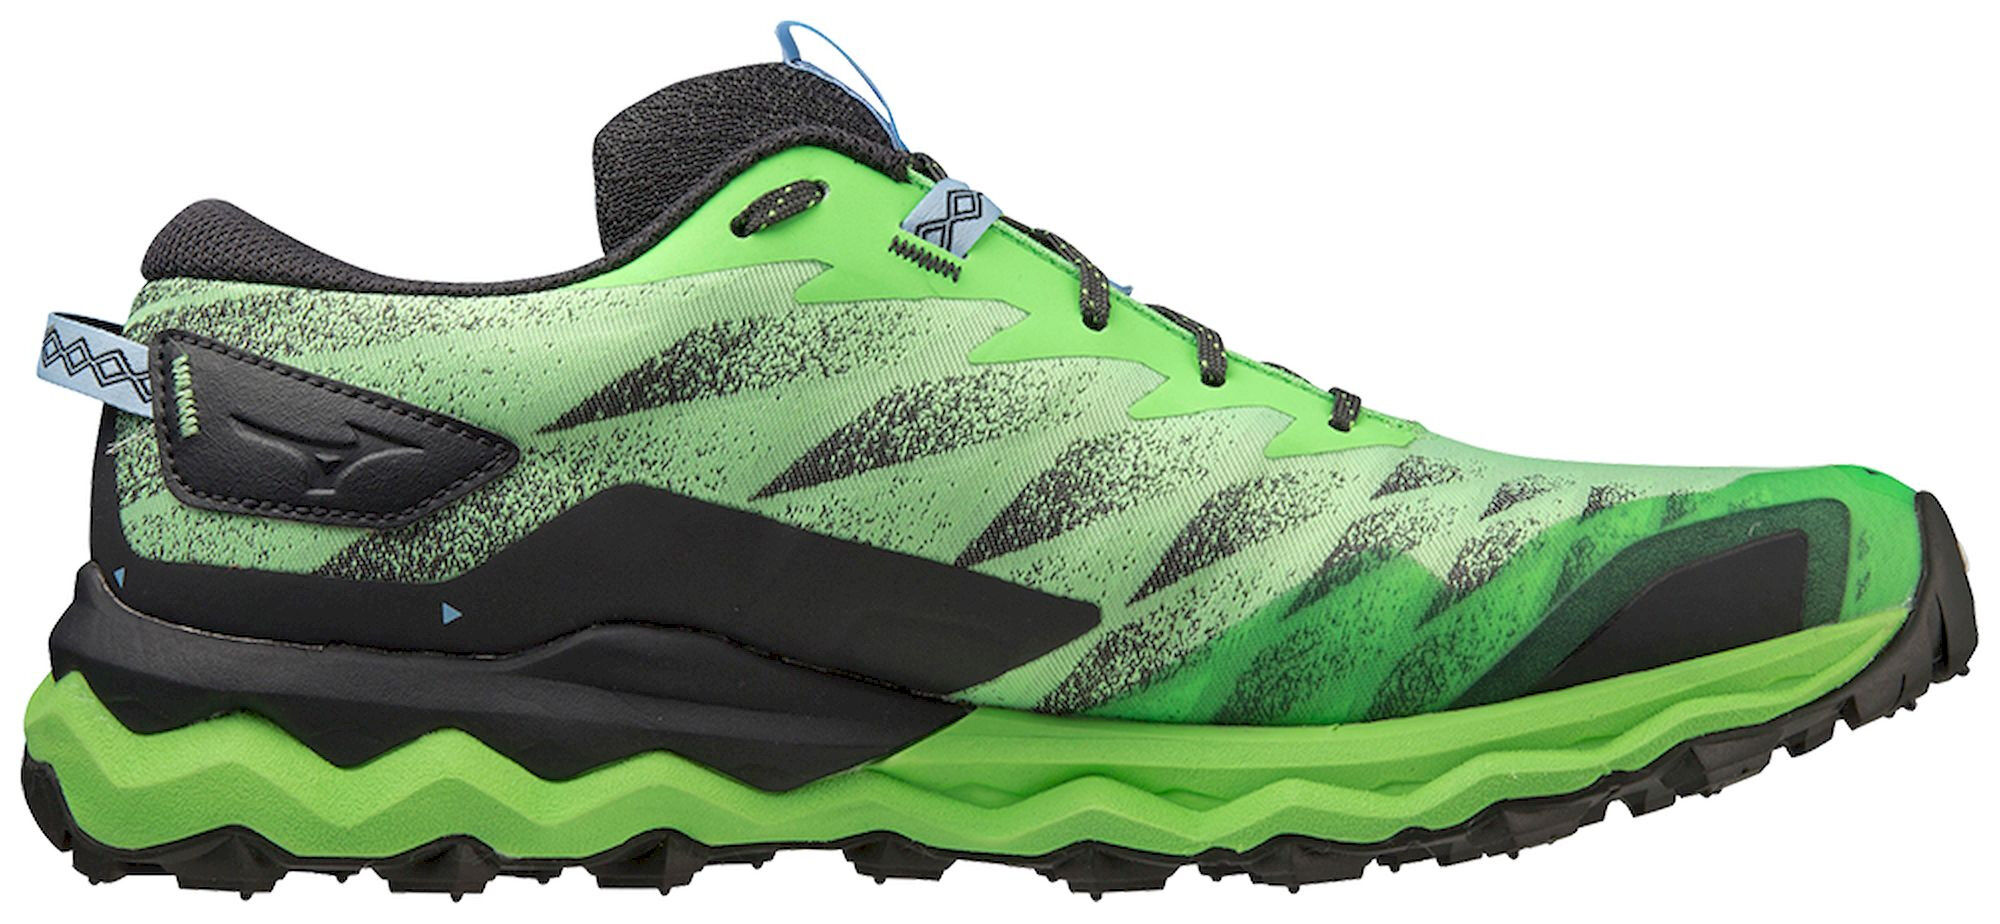 Mizuno Wave Daichi 7 - Trail running shoes - Men's